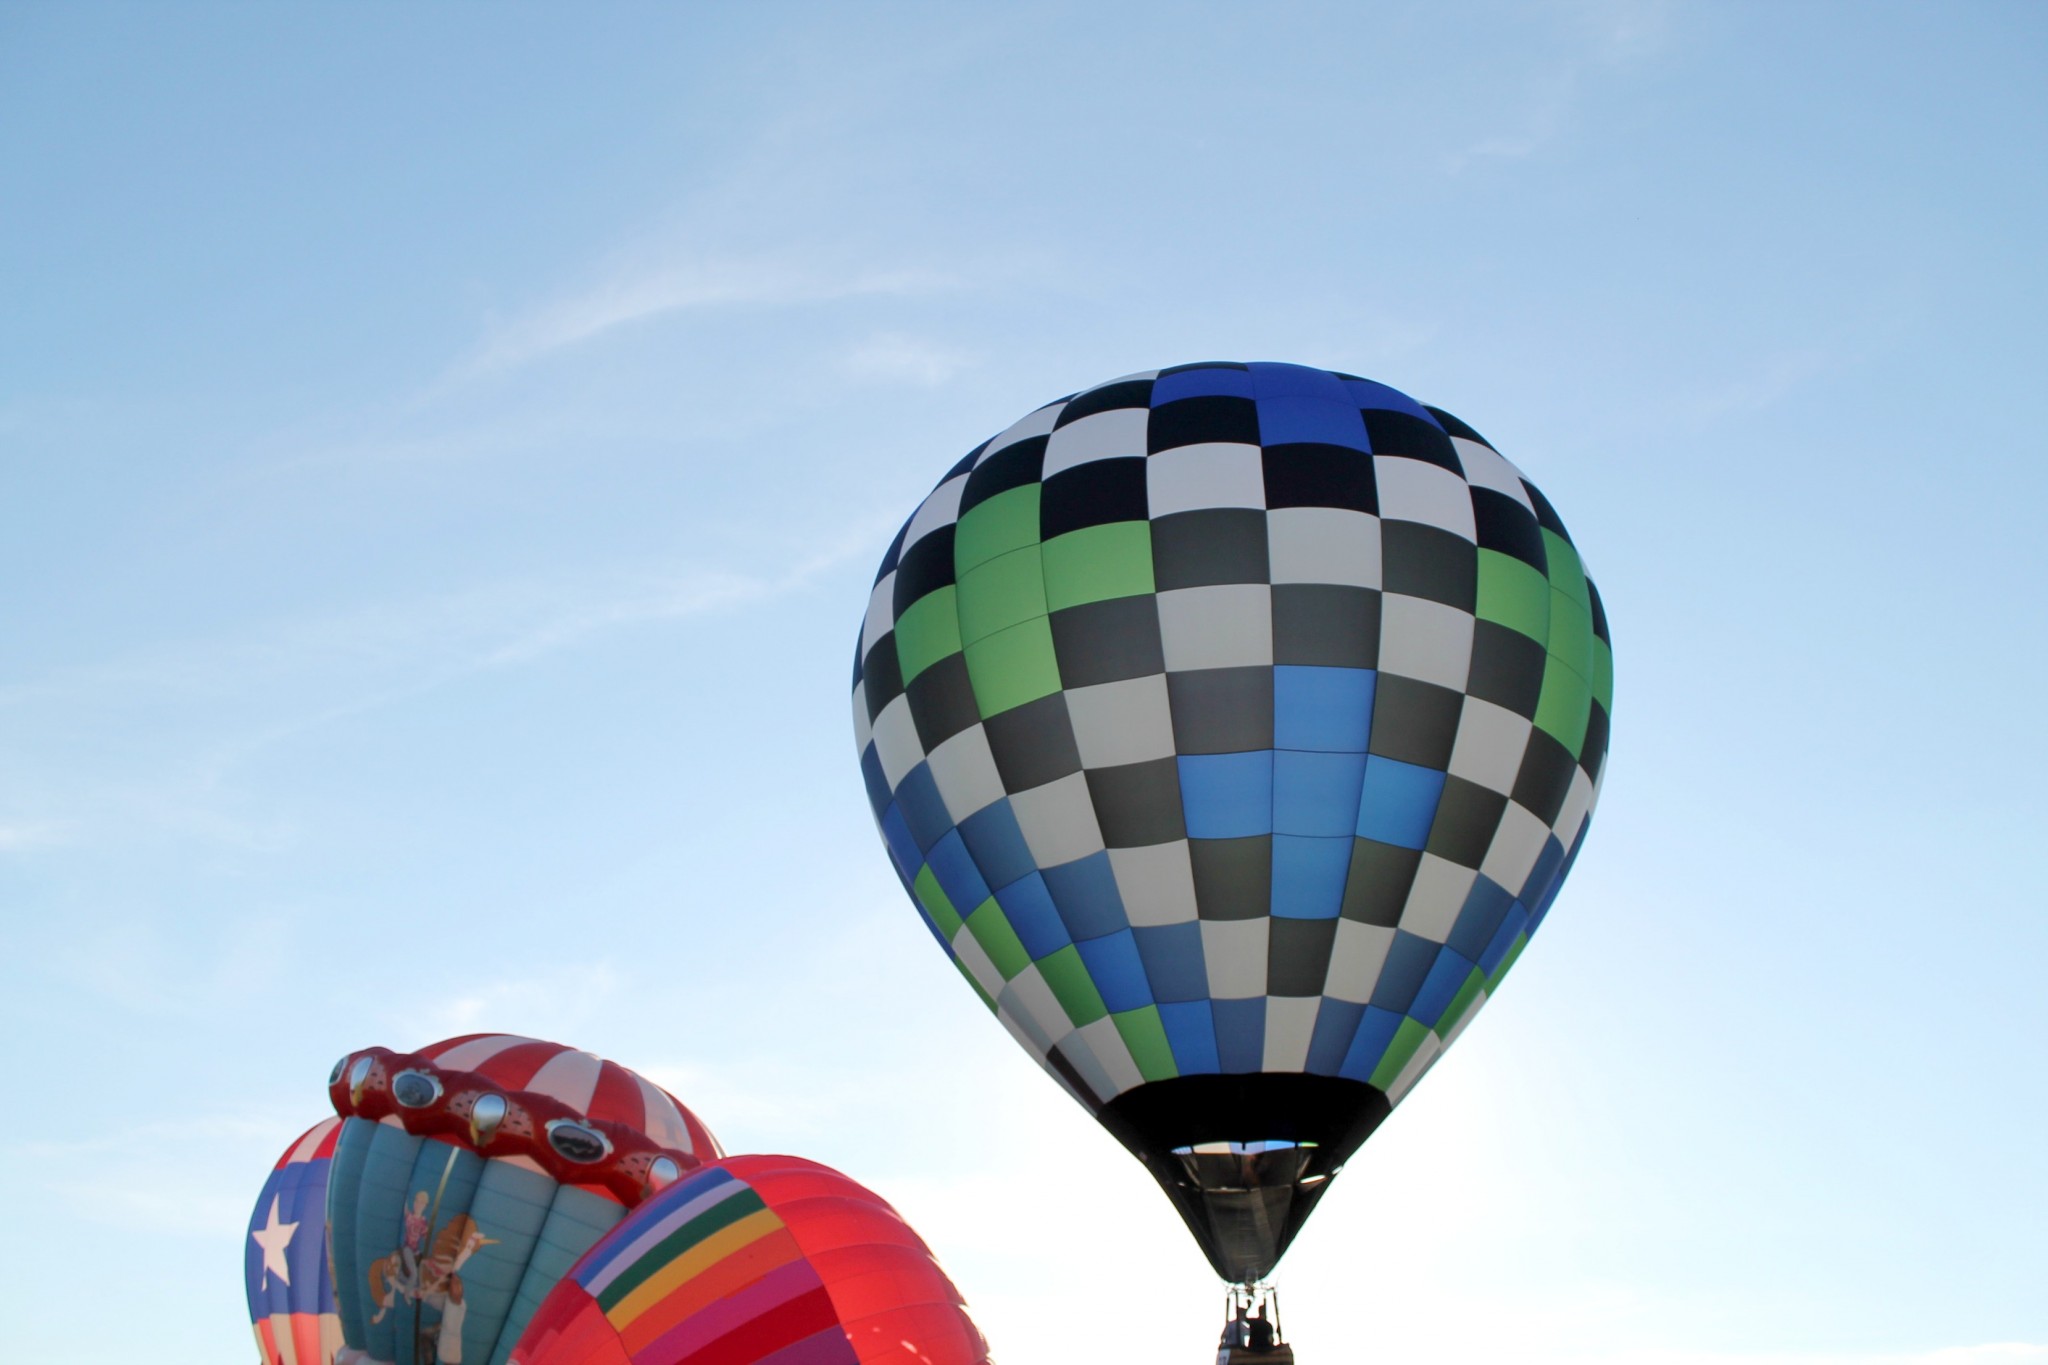 Michigan Challenge Balloon Fest 2016